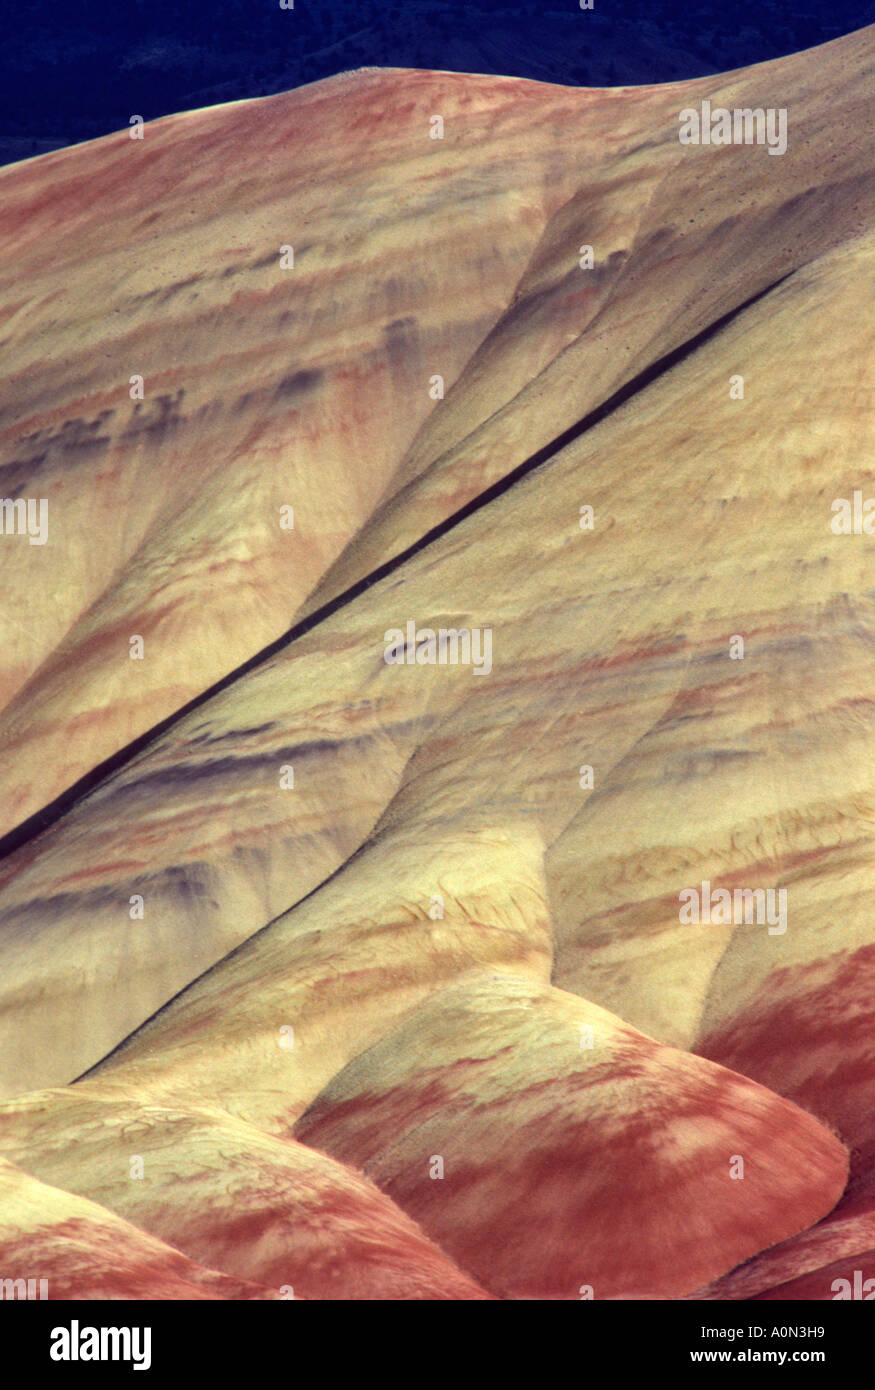 Bemalte Hills John Day Fossil Betten Nationaldenkmal östlichen Oregon USA Farbwechsel mit der Zeit des Tages-Wetter-Feuchtigkeit-Inhalt Stockfoto